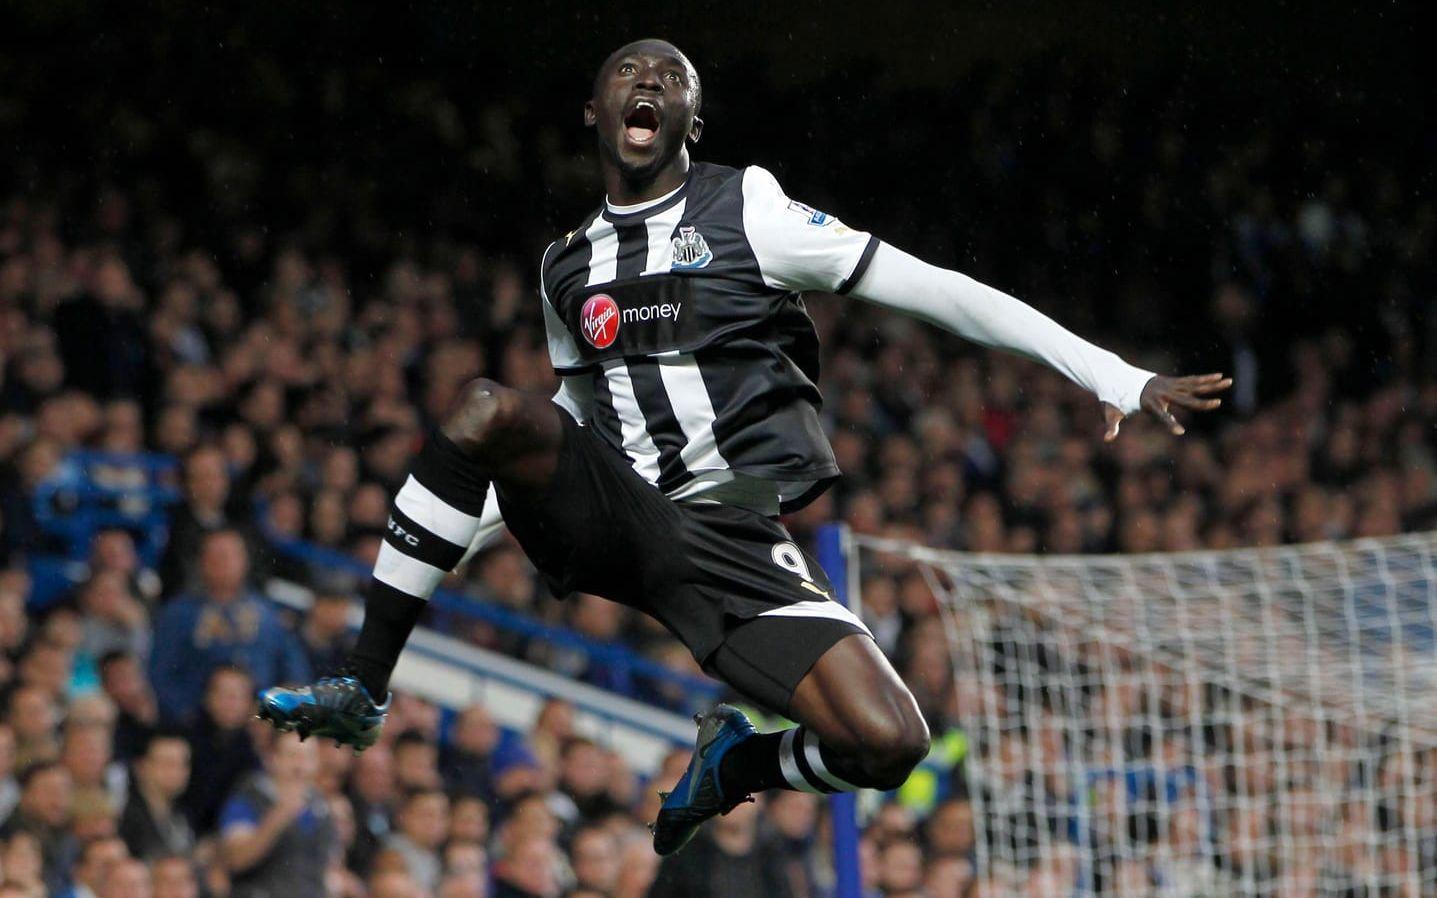 SUCCÈN. Papiss Cissé skrev på för Newcastle i januari 2012. fem månader senare hade han gjort 13 mål på 14 matcher i Premier League. Ett av dem, inprickat mot Chelsea, valdes till säsongens snyggaste av BBC. Foto: Bildbyrån